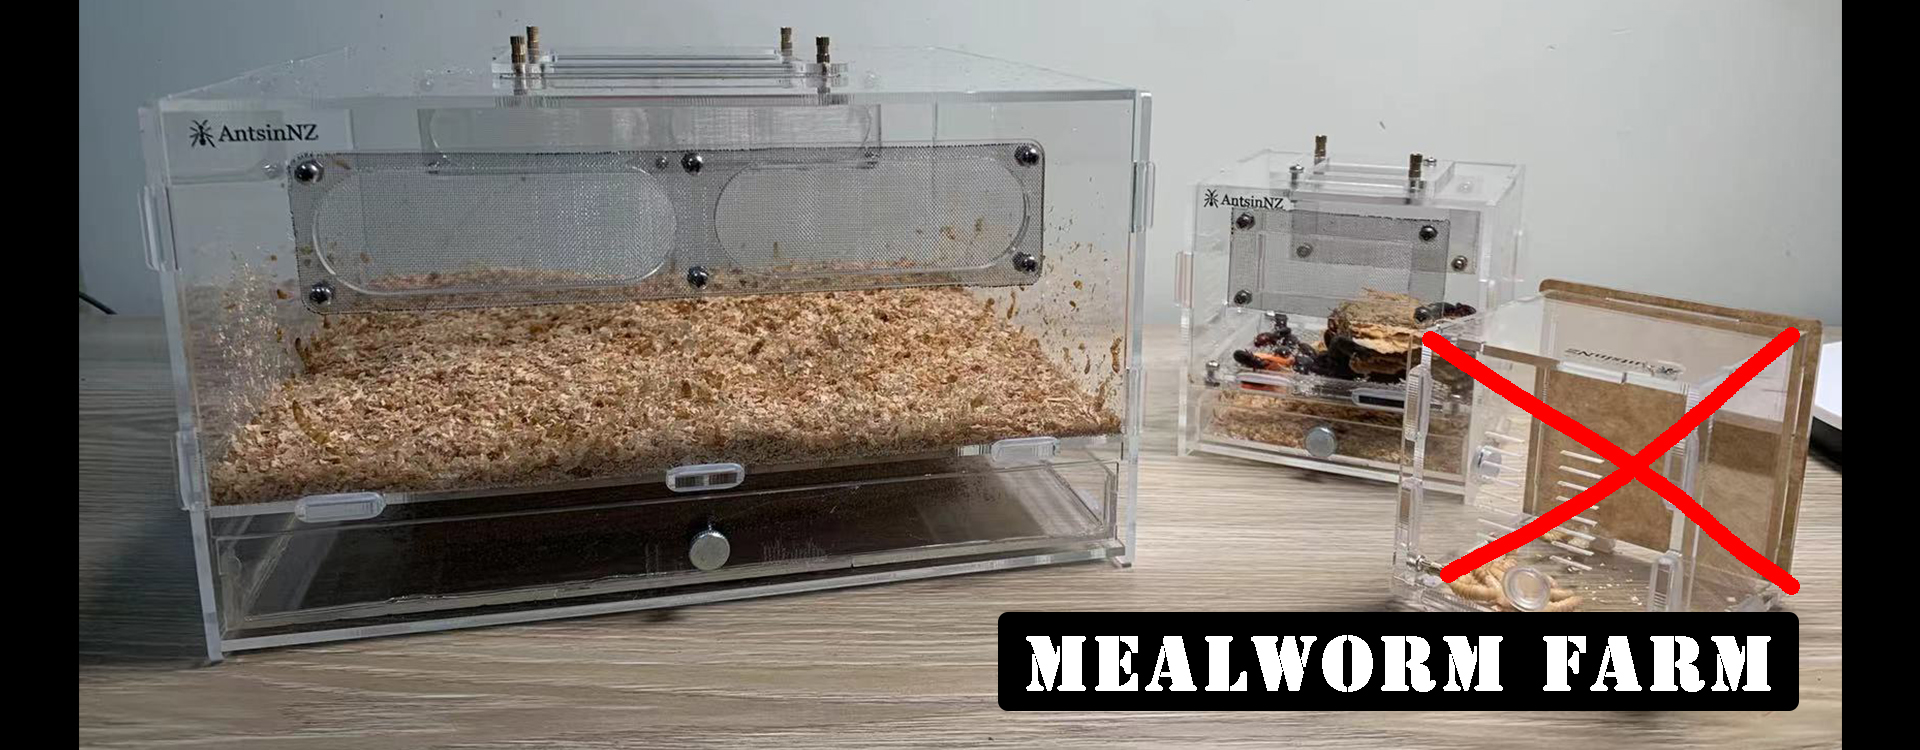 mealworm farm